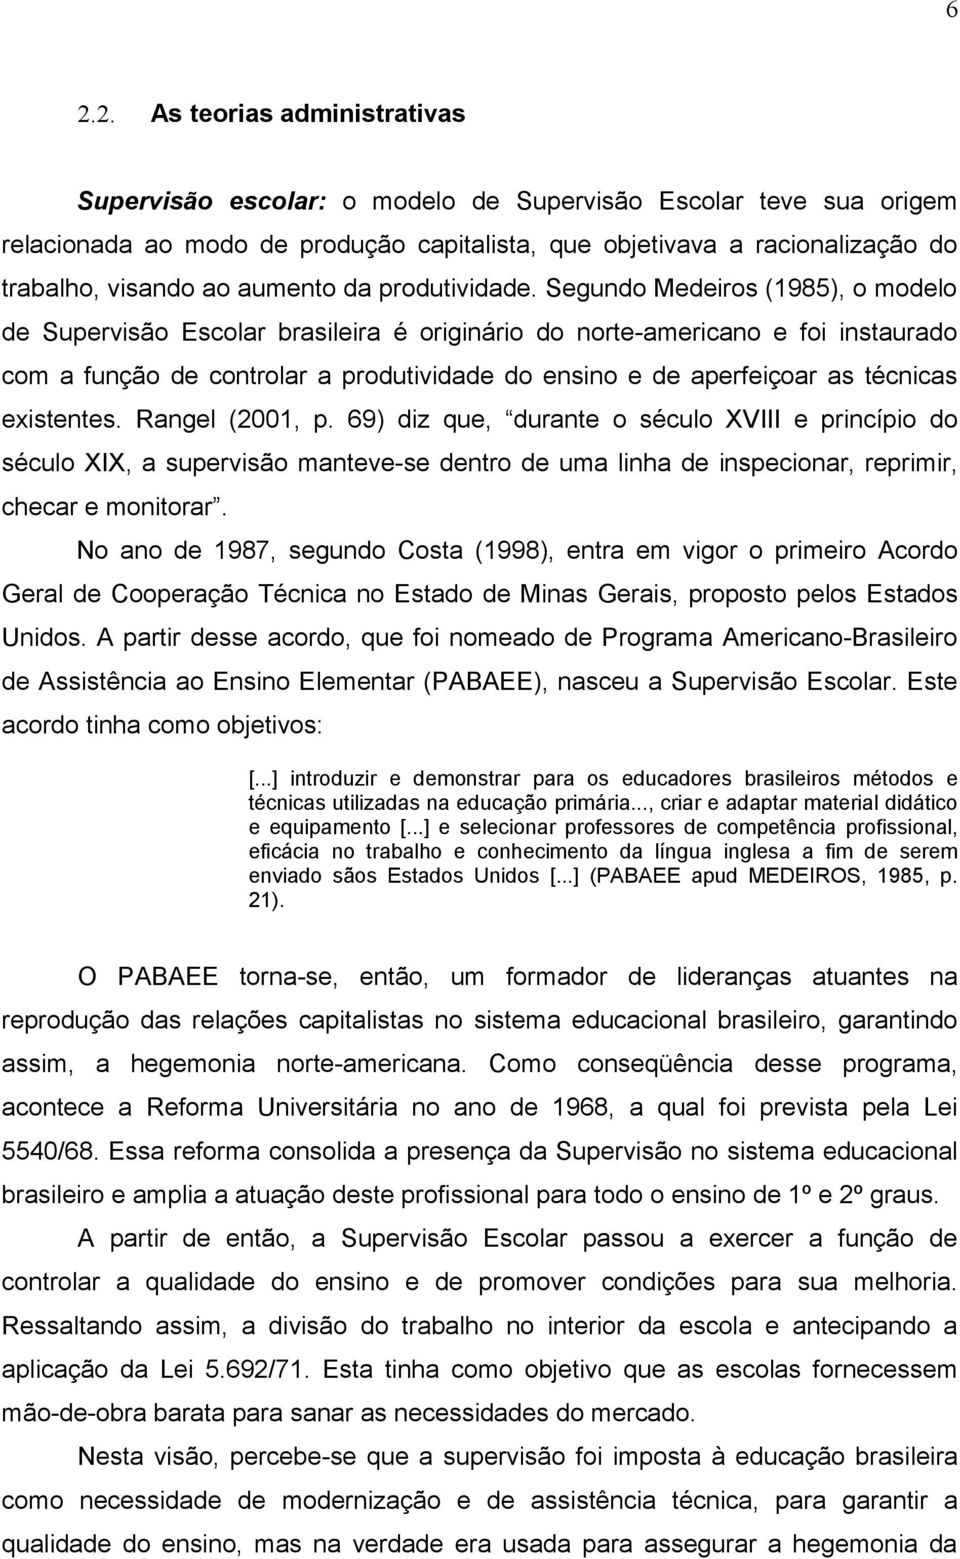 Segundo Medeiros (1985), o modelo de Supervisão Escolar brasileira é originário do norte-americano e foi instaurado com a função de controlar a produtividade do ensino e de aperfeiçoar as técnicas